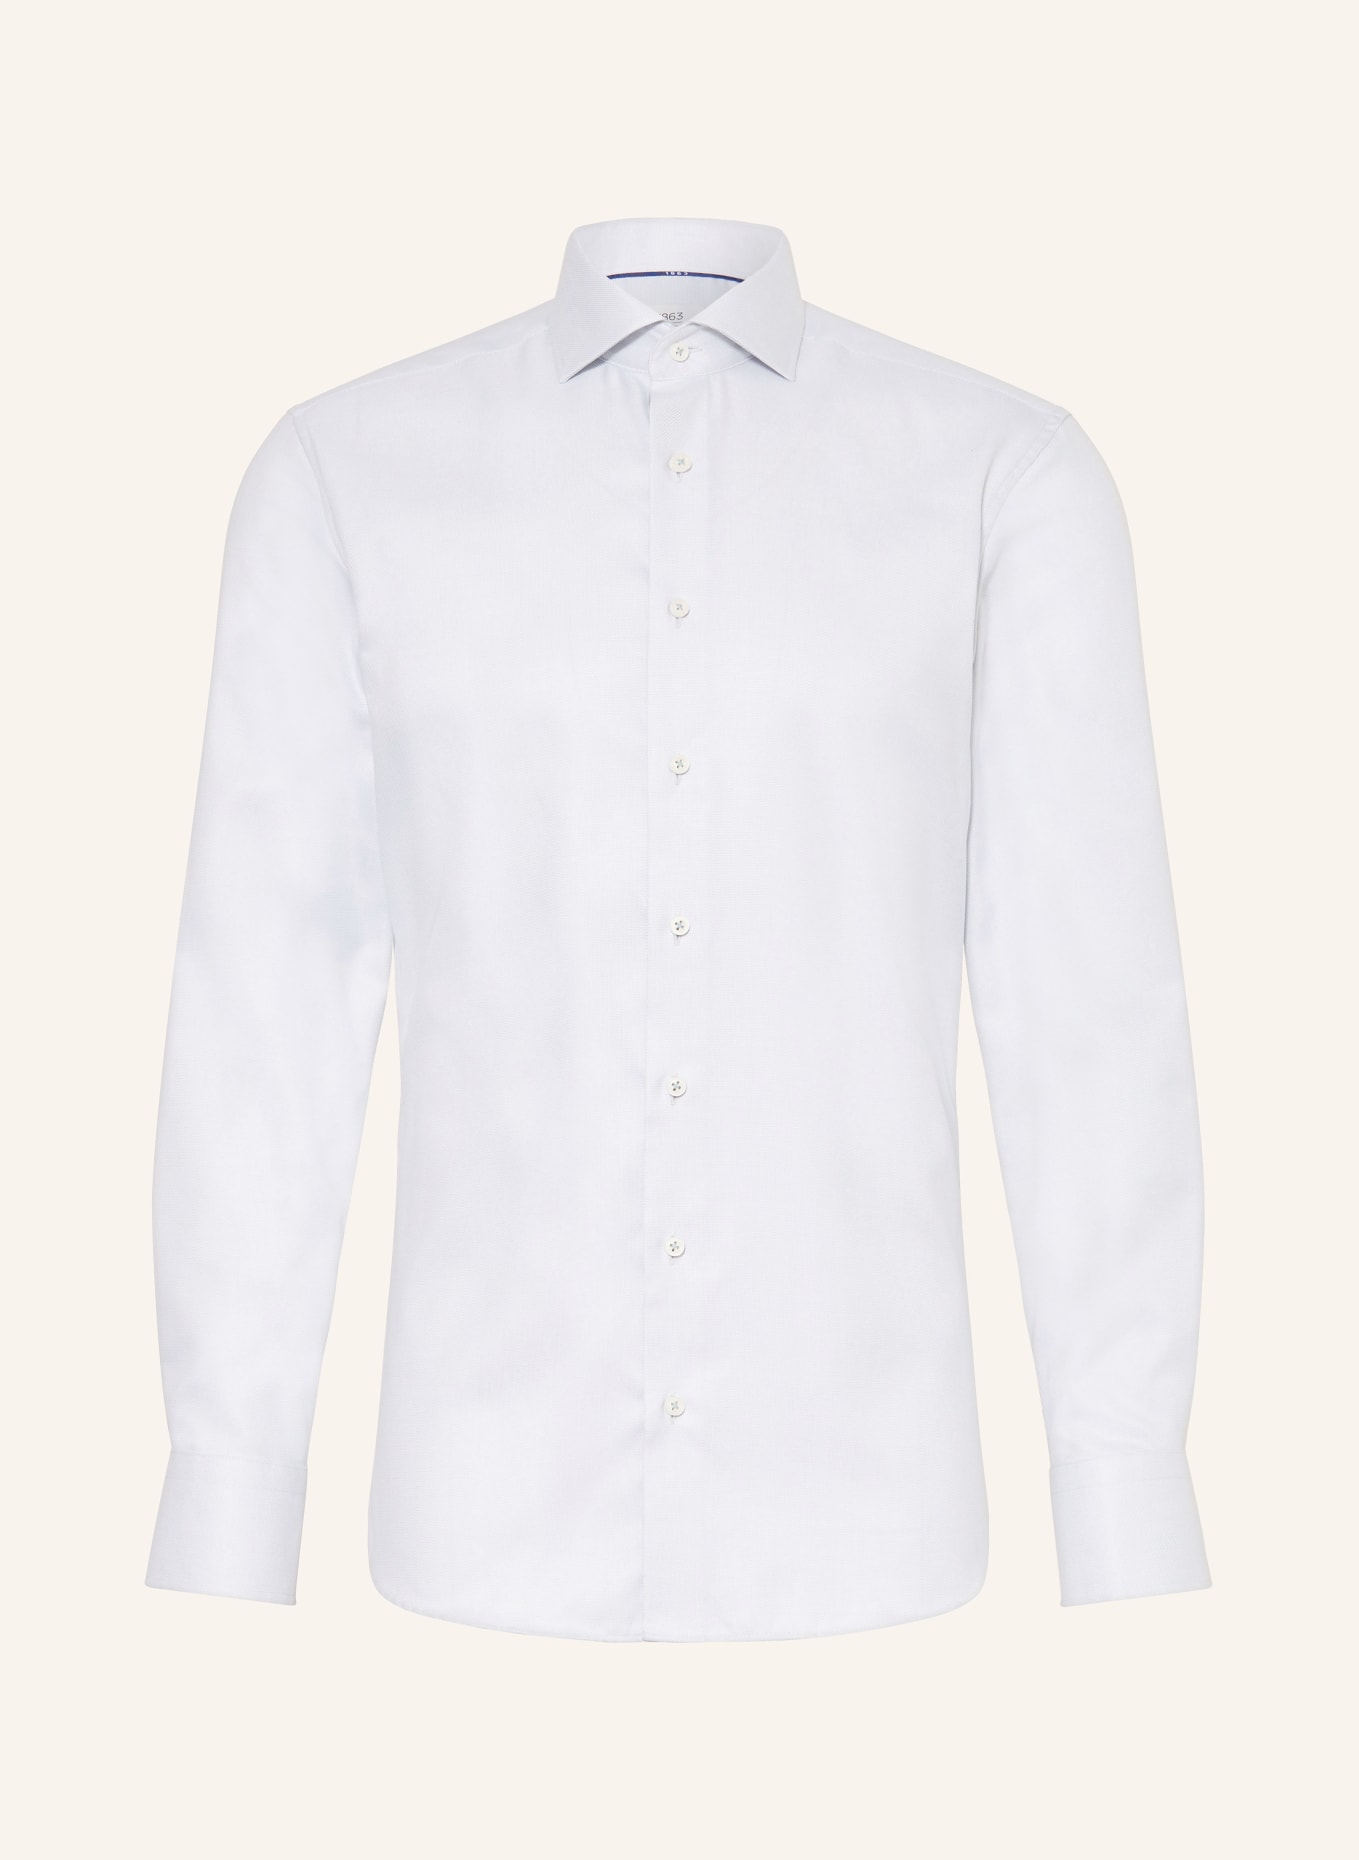 ETERNA 1863 Shirt slim fit, Color: MINT (Image 1)